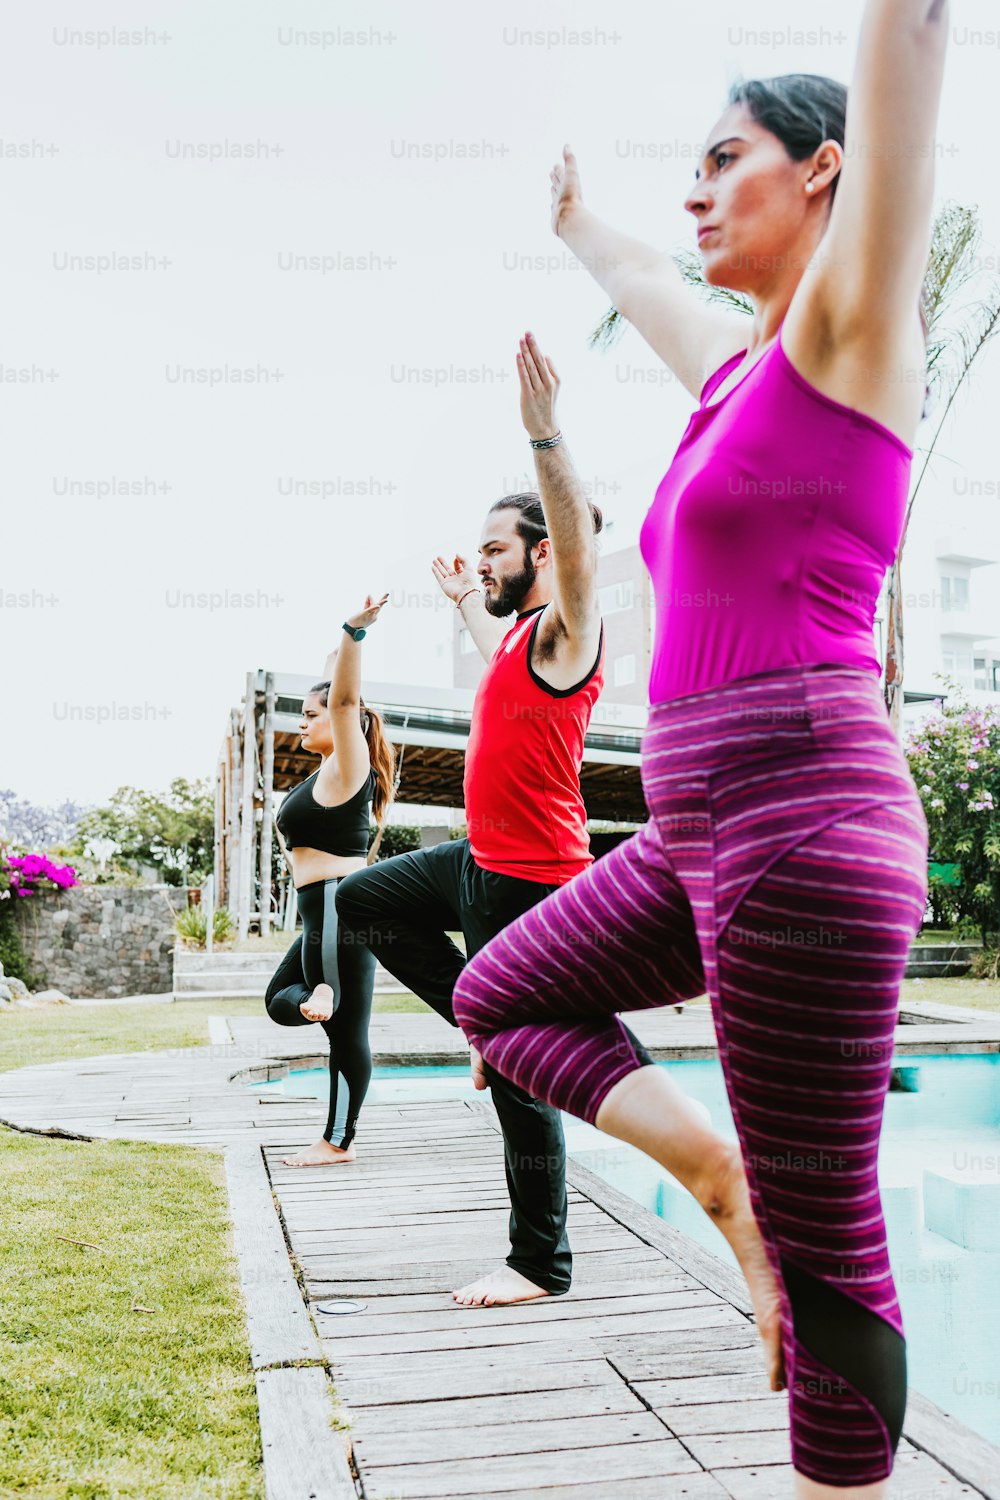 Gruppe lateinamerikanischer Menschen, die Yoga-Posen praktizieren, die in Lateinamerika im Freien stehen